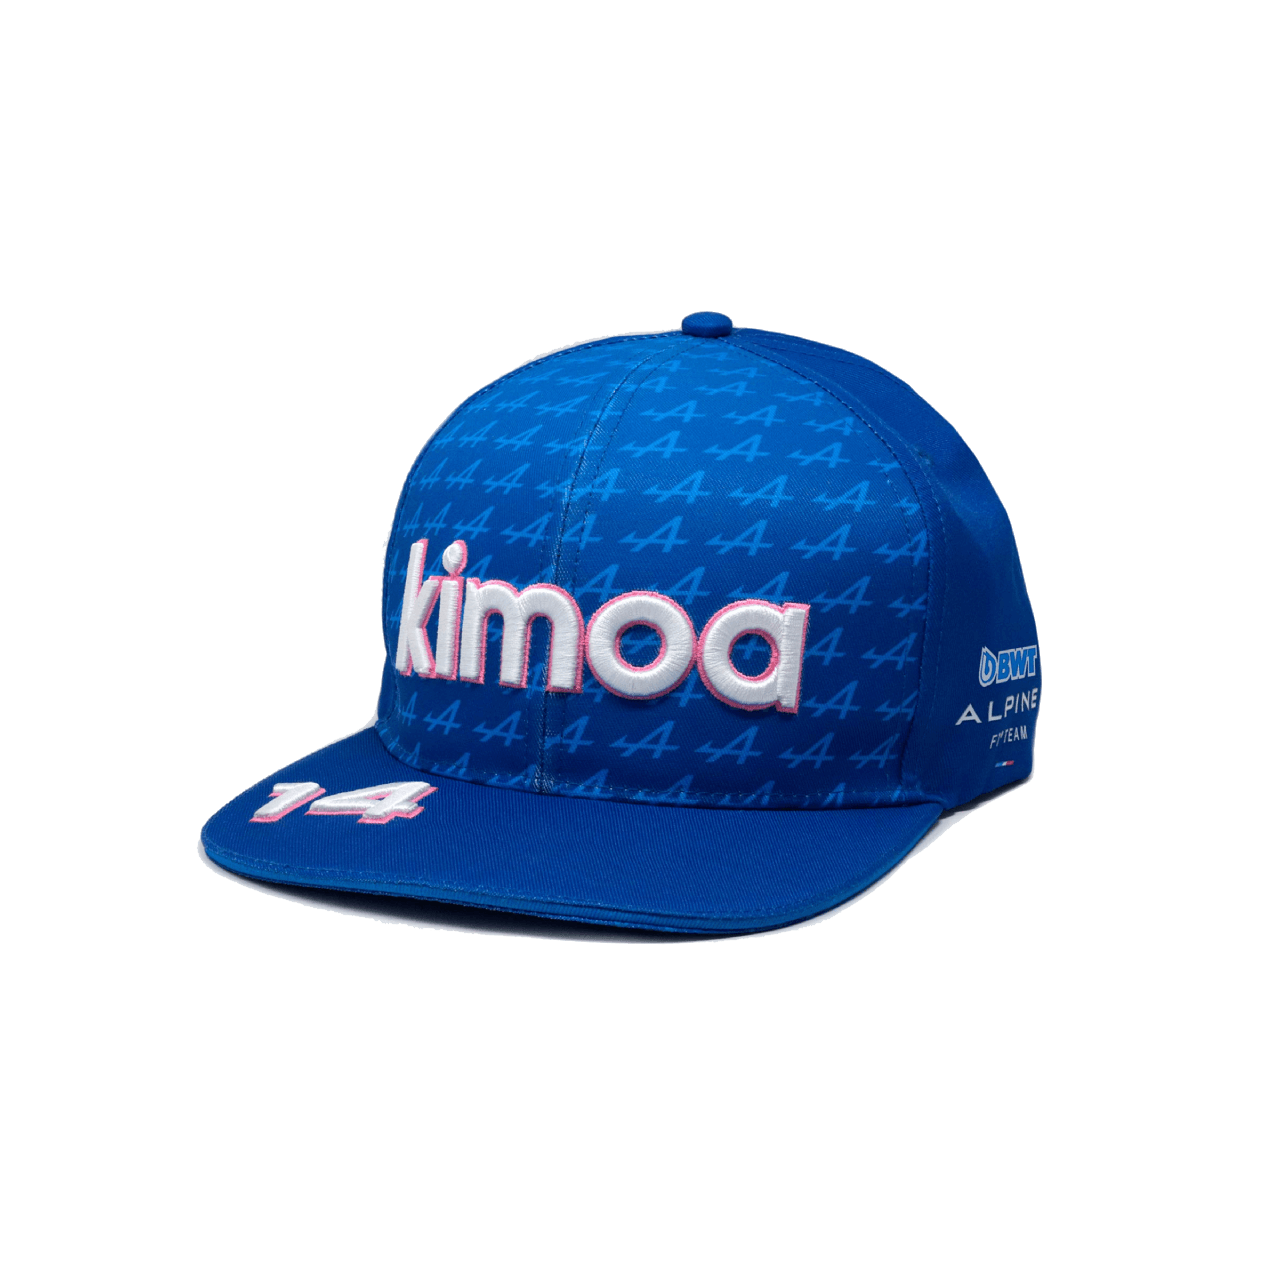 Kimoa BWT ALPINE F1 Snappack Kappe blau mit weißen und pinken Elementen